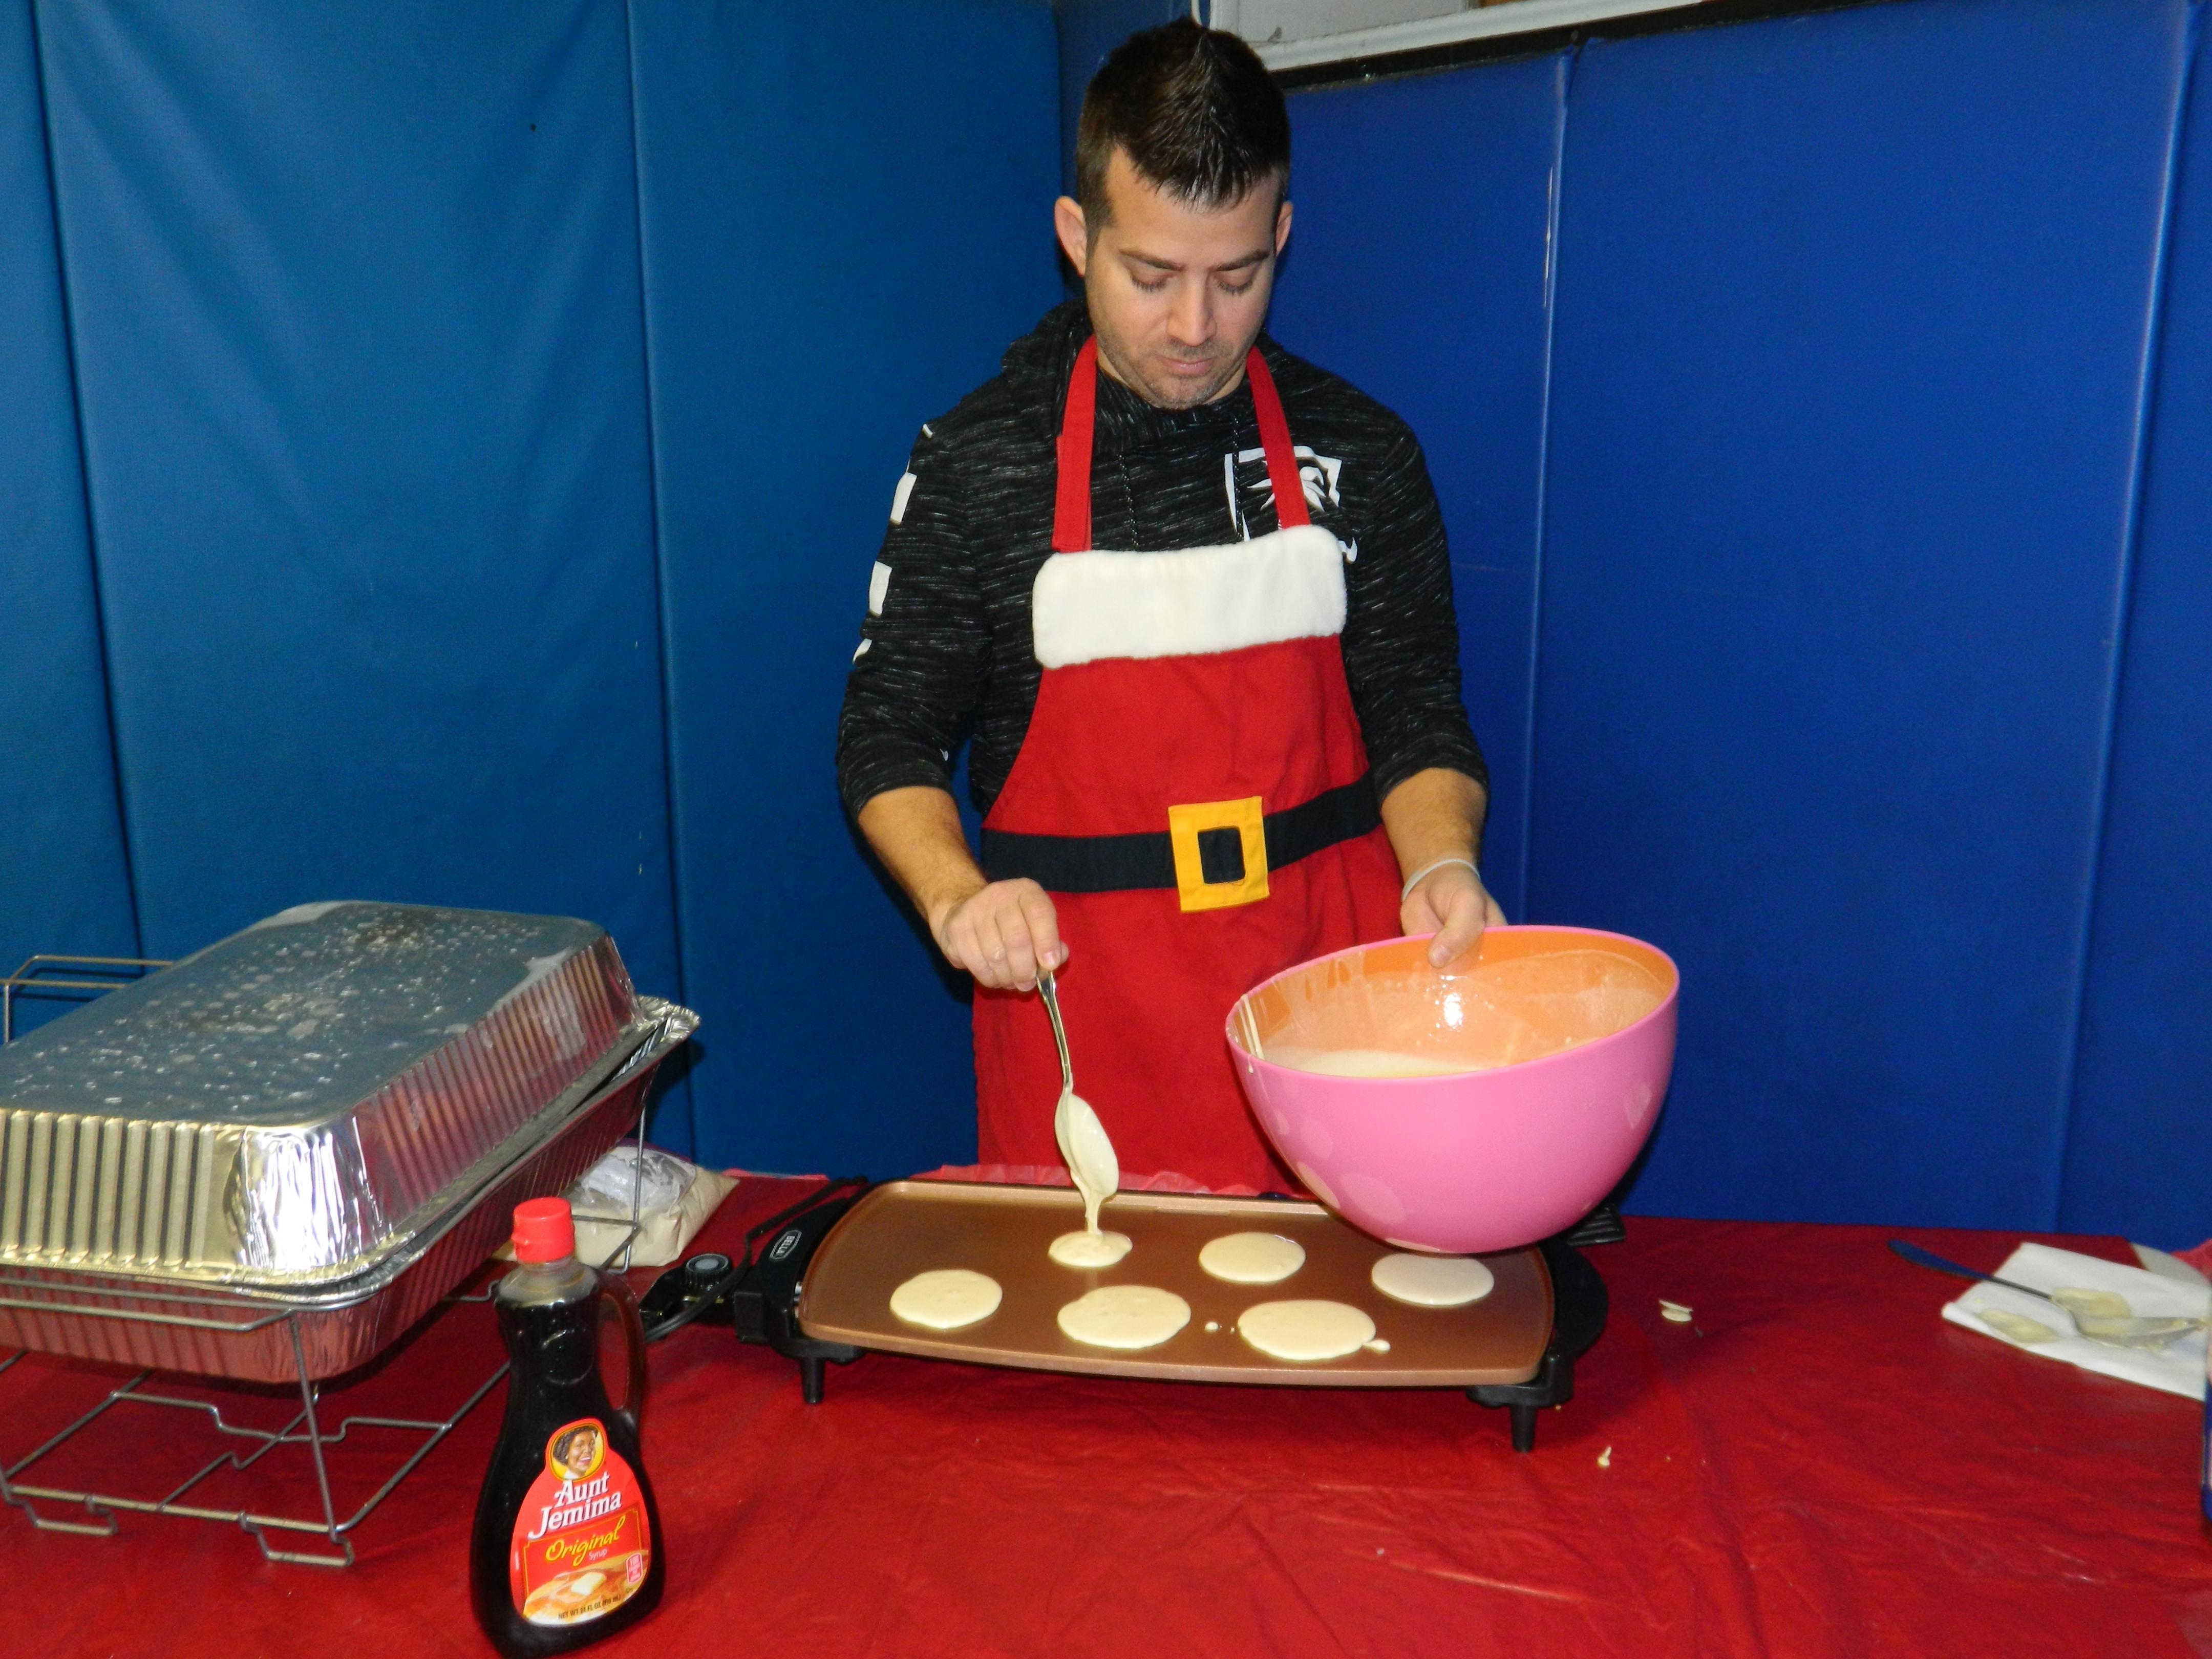 Mr. Dorsett making pancakes on the griddle